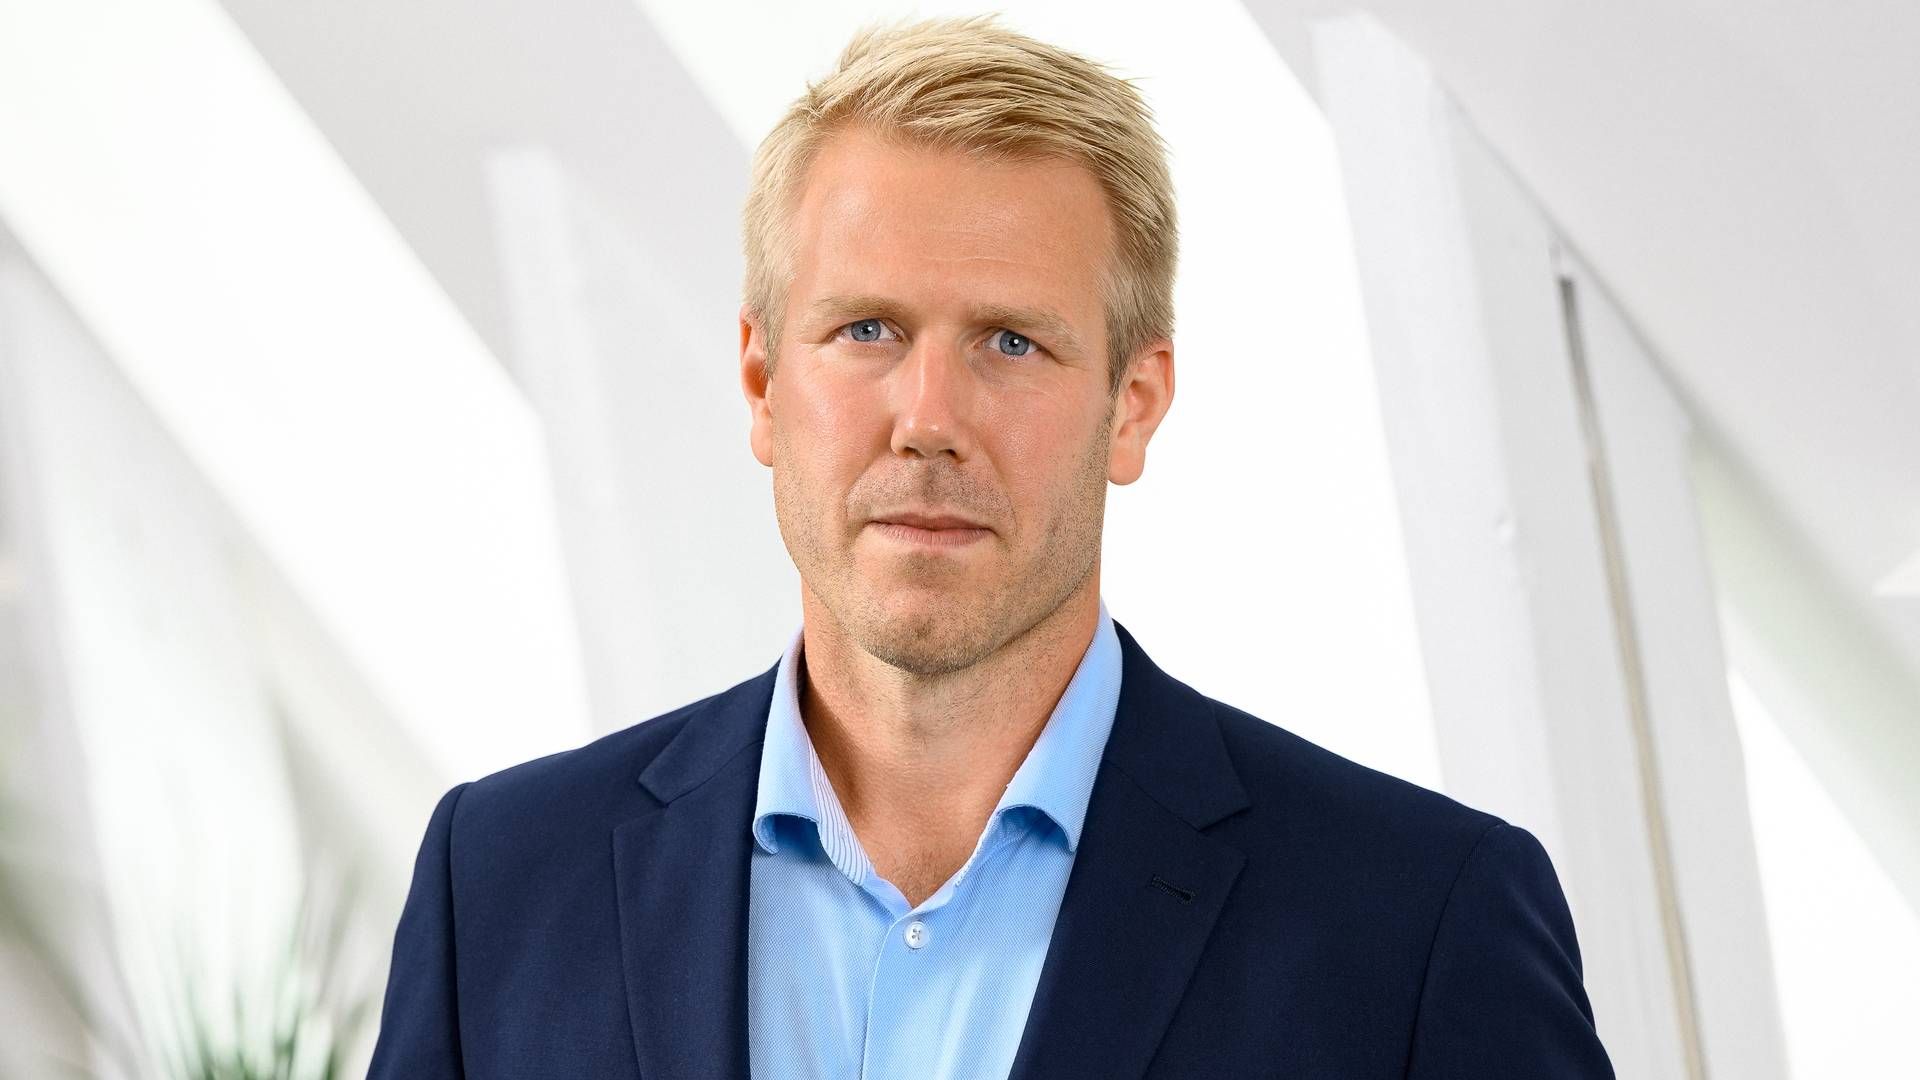 NY ØKONOMISJEF: Erik Hansson er utnevnt som ny økonomidirektør i Kjell Group, eierselskapet til Kjell & Company. | Foto: Kjell Group